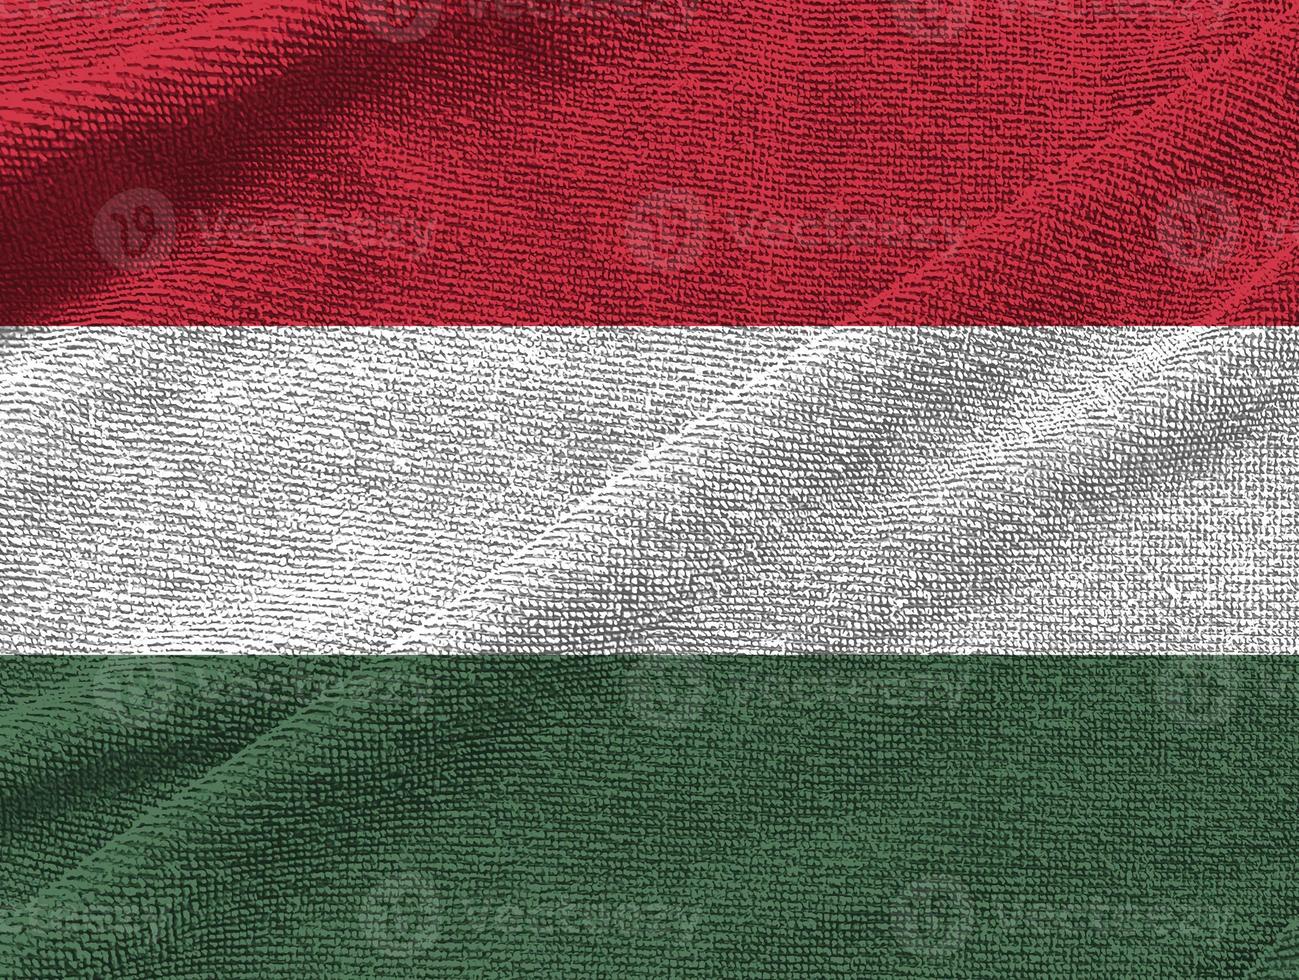 onda de bandeira da Hungria isolada em png ou fundo transparente, símbolos da Hungria, modelo para banner, cartão, publicidade, promover, comercial de tv, anúncios, web design, ilustração foto